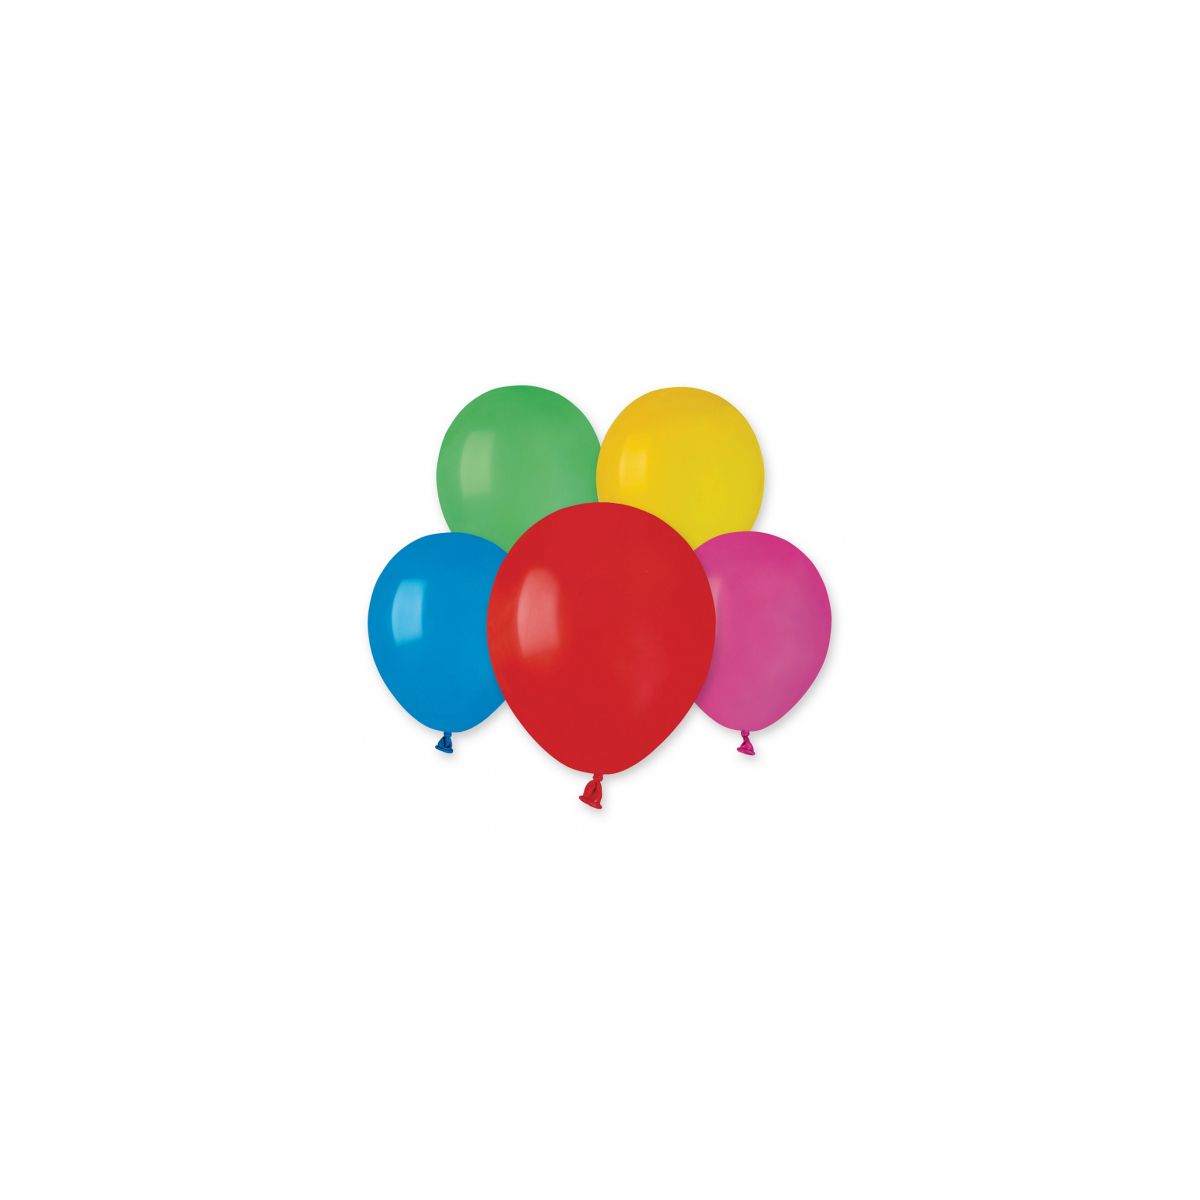 Balon gumowy Godan różnokolorowy pastelowy mix pastelowy (A50/80)